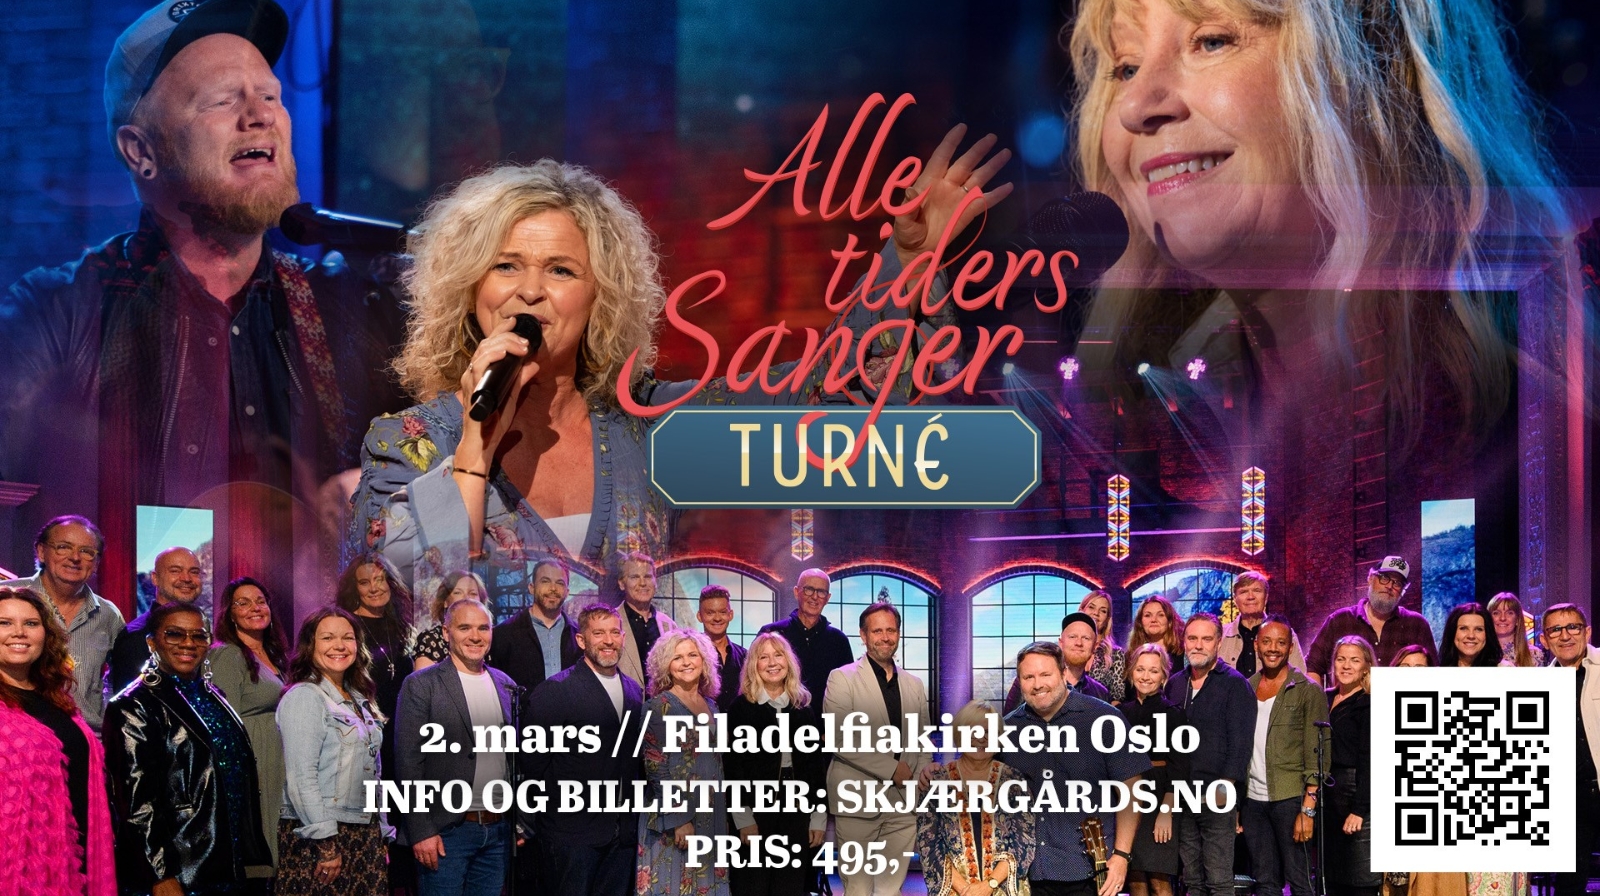 NRK-suksessen "Alle tider sanger" er på turné